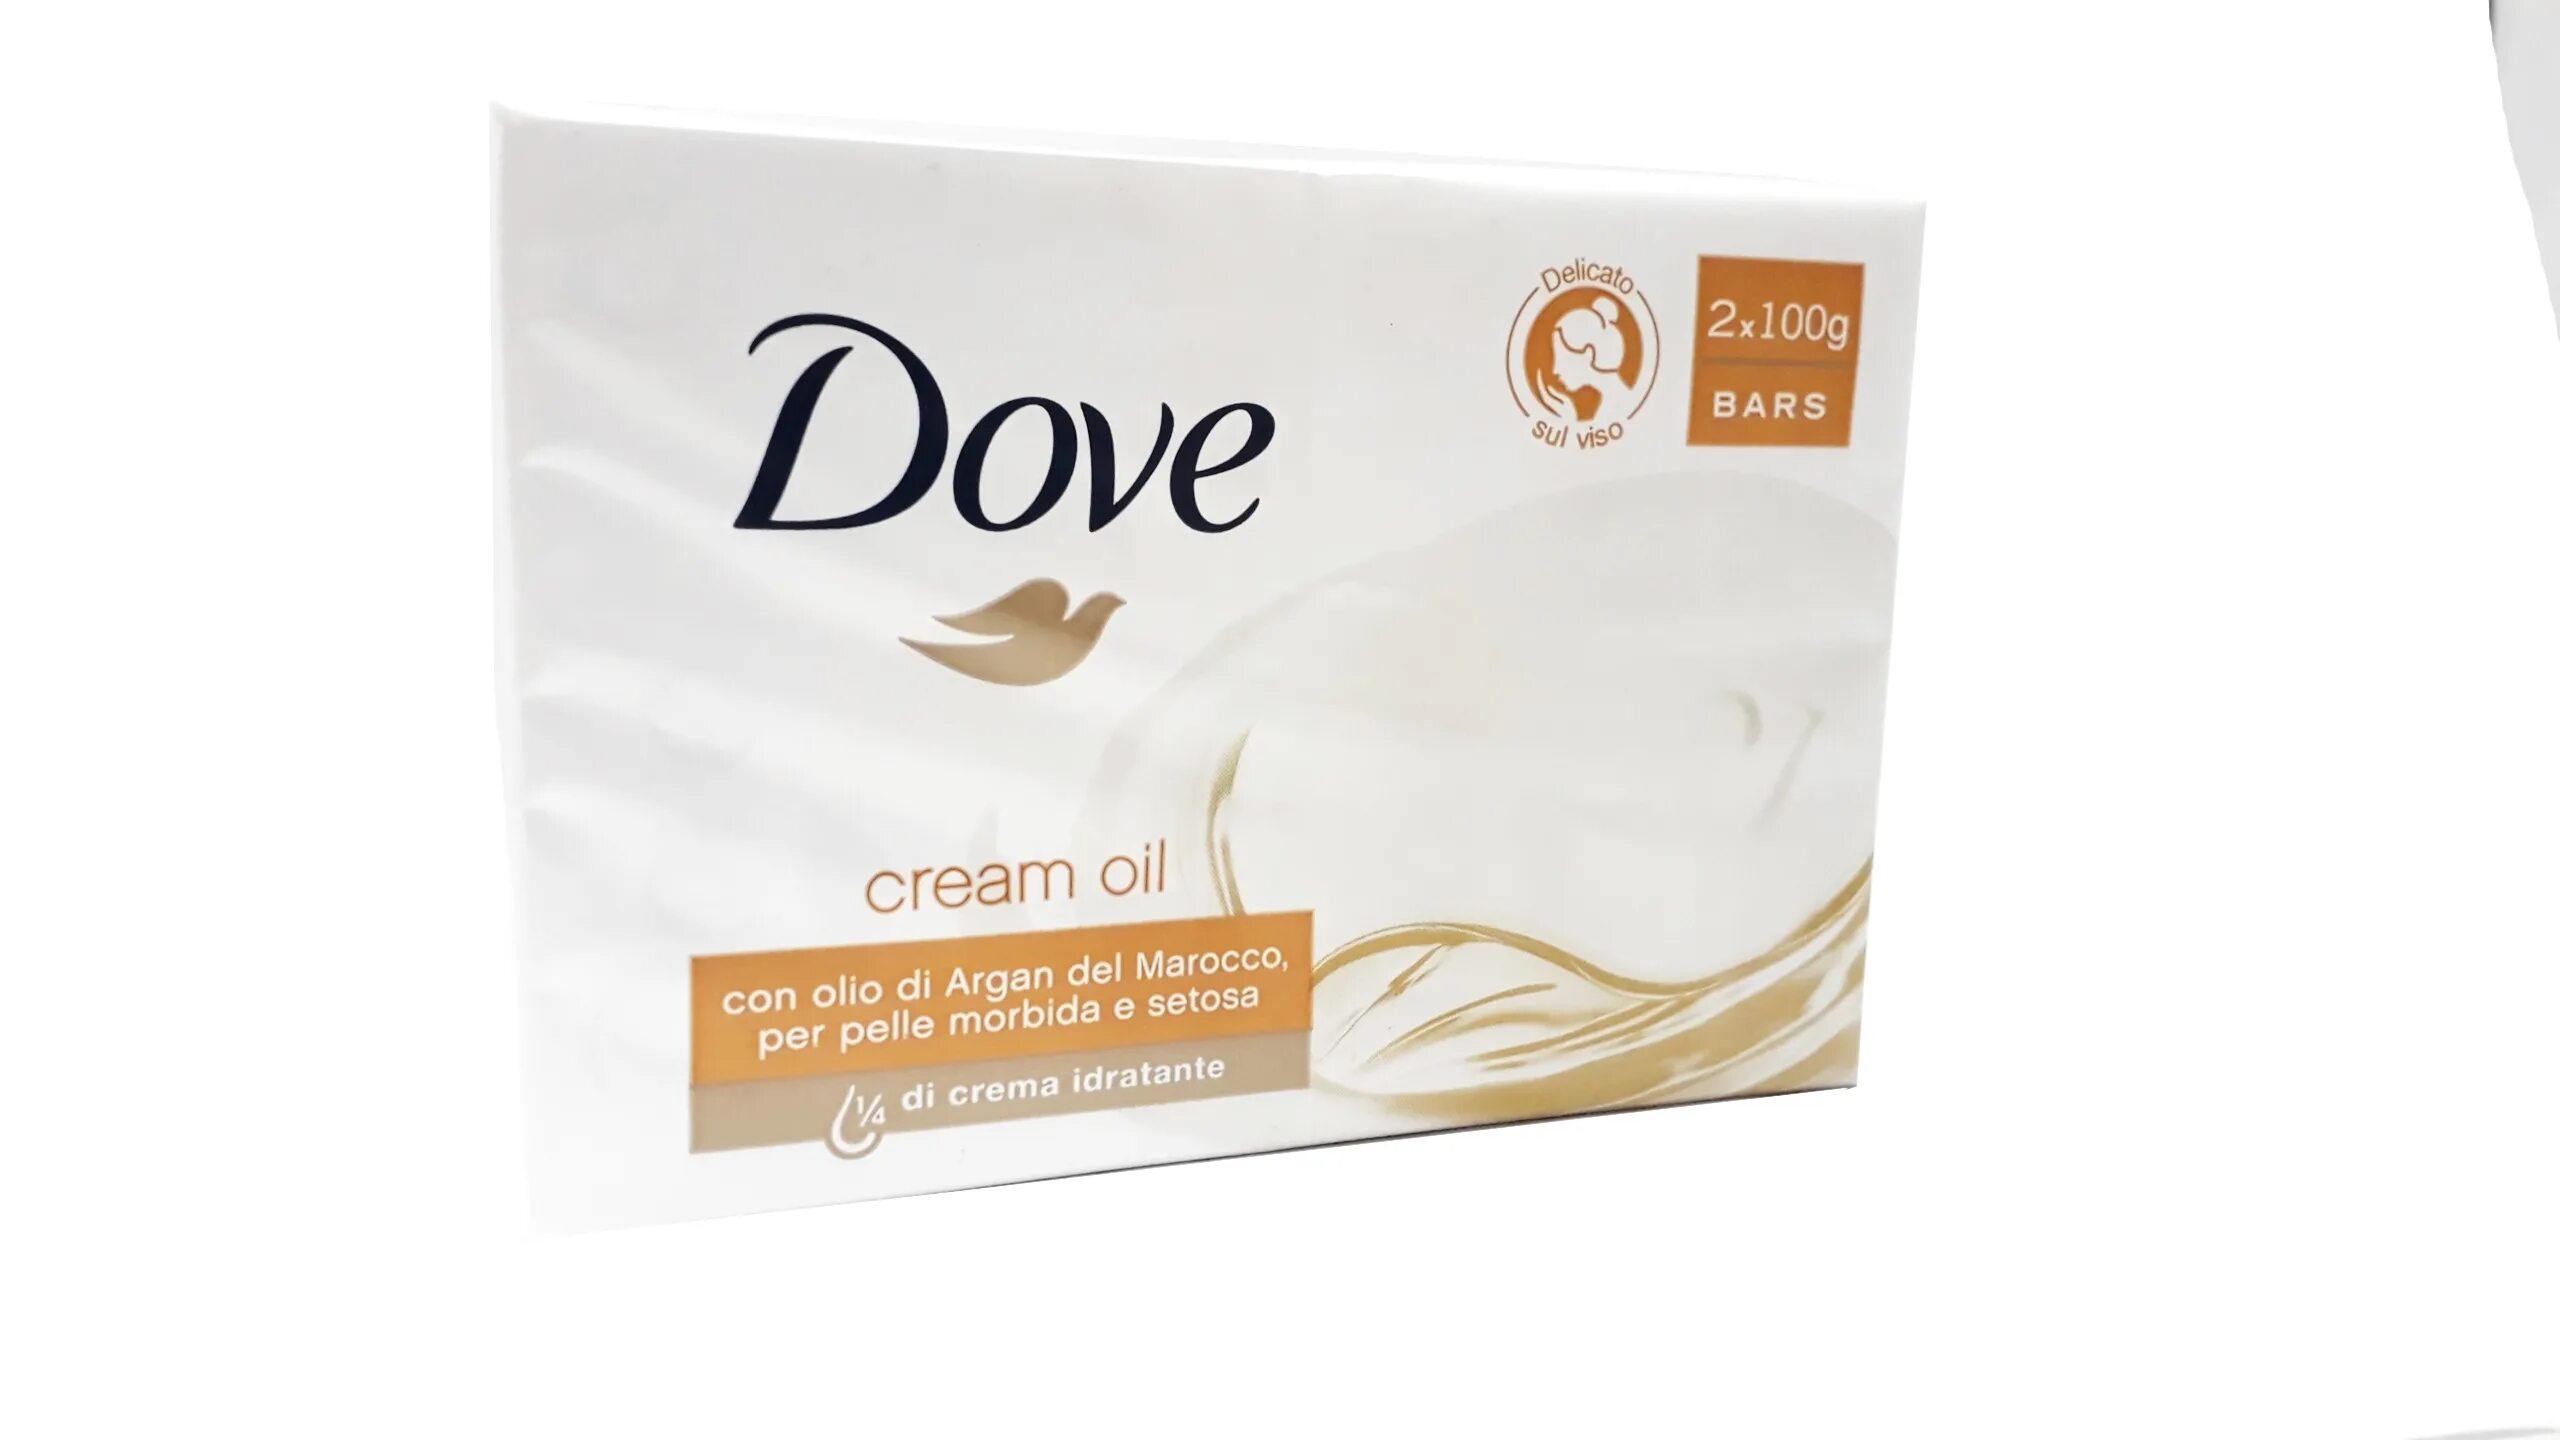 Мыло dove Oil. Dove 100 gr Cream Oil. Мыло dove драгоценные масла, 100гр. Dove крем-мыло Argan Oil 135г. Туалетная мыло дав